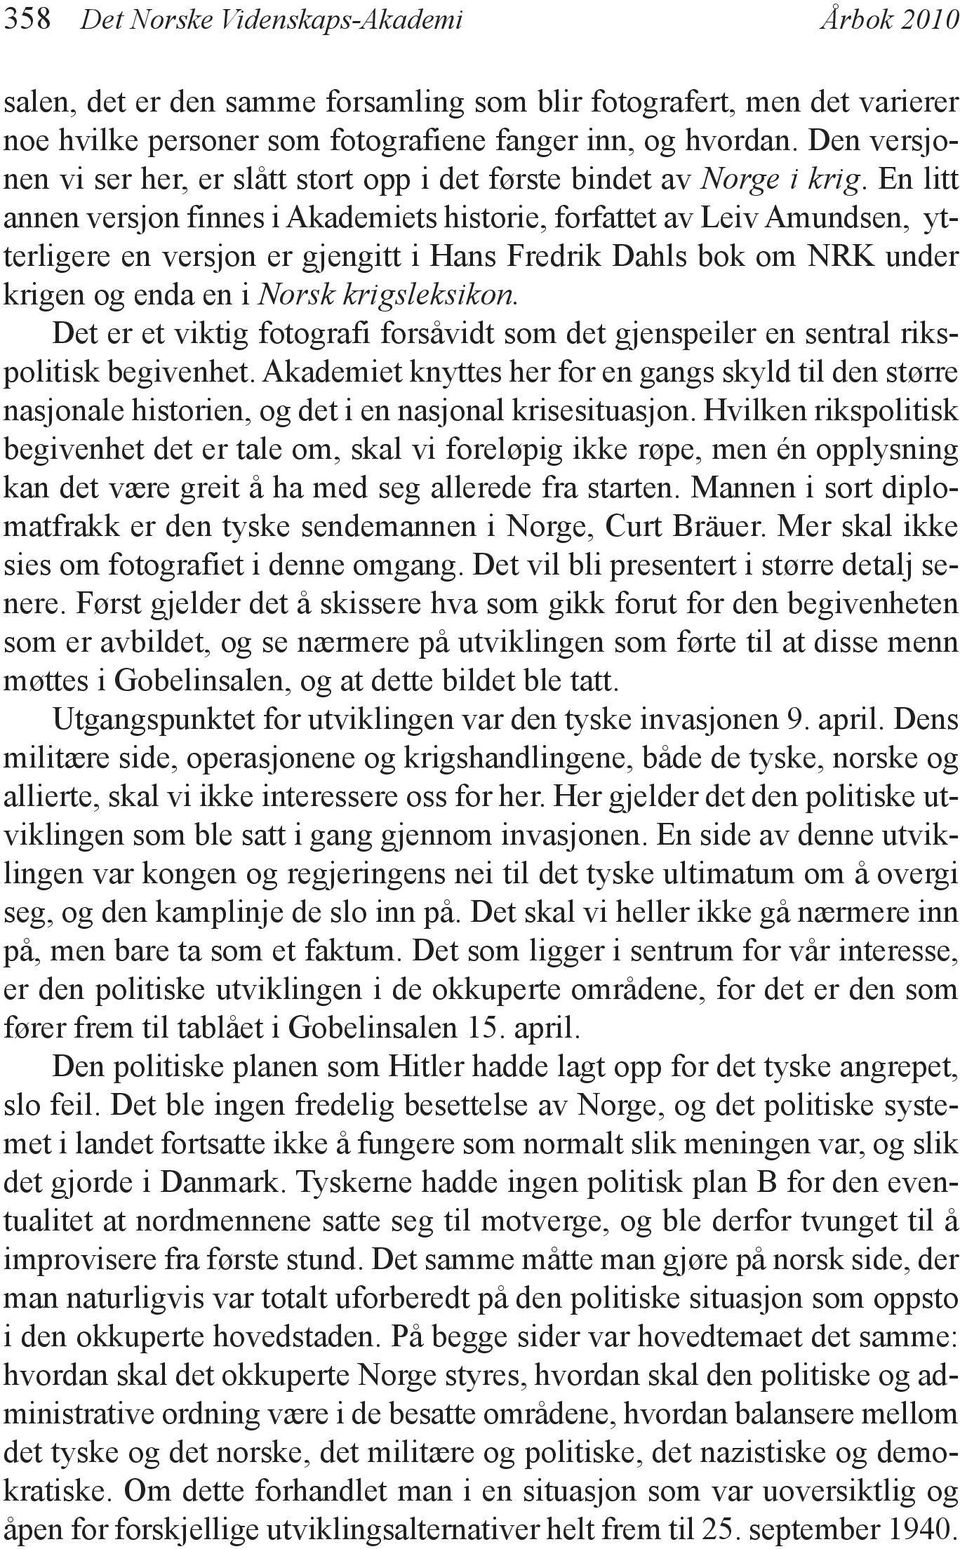 En litt annen versjon finnes i Akademiets historie, forfattet av Leiv Amundsen, ytterligere en versjon er gjengitt i Hans Fredrik Dahls bok om NRK under krigen og enda en i Norsk krigsleksikon.